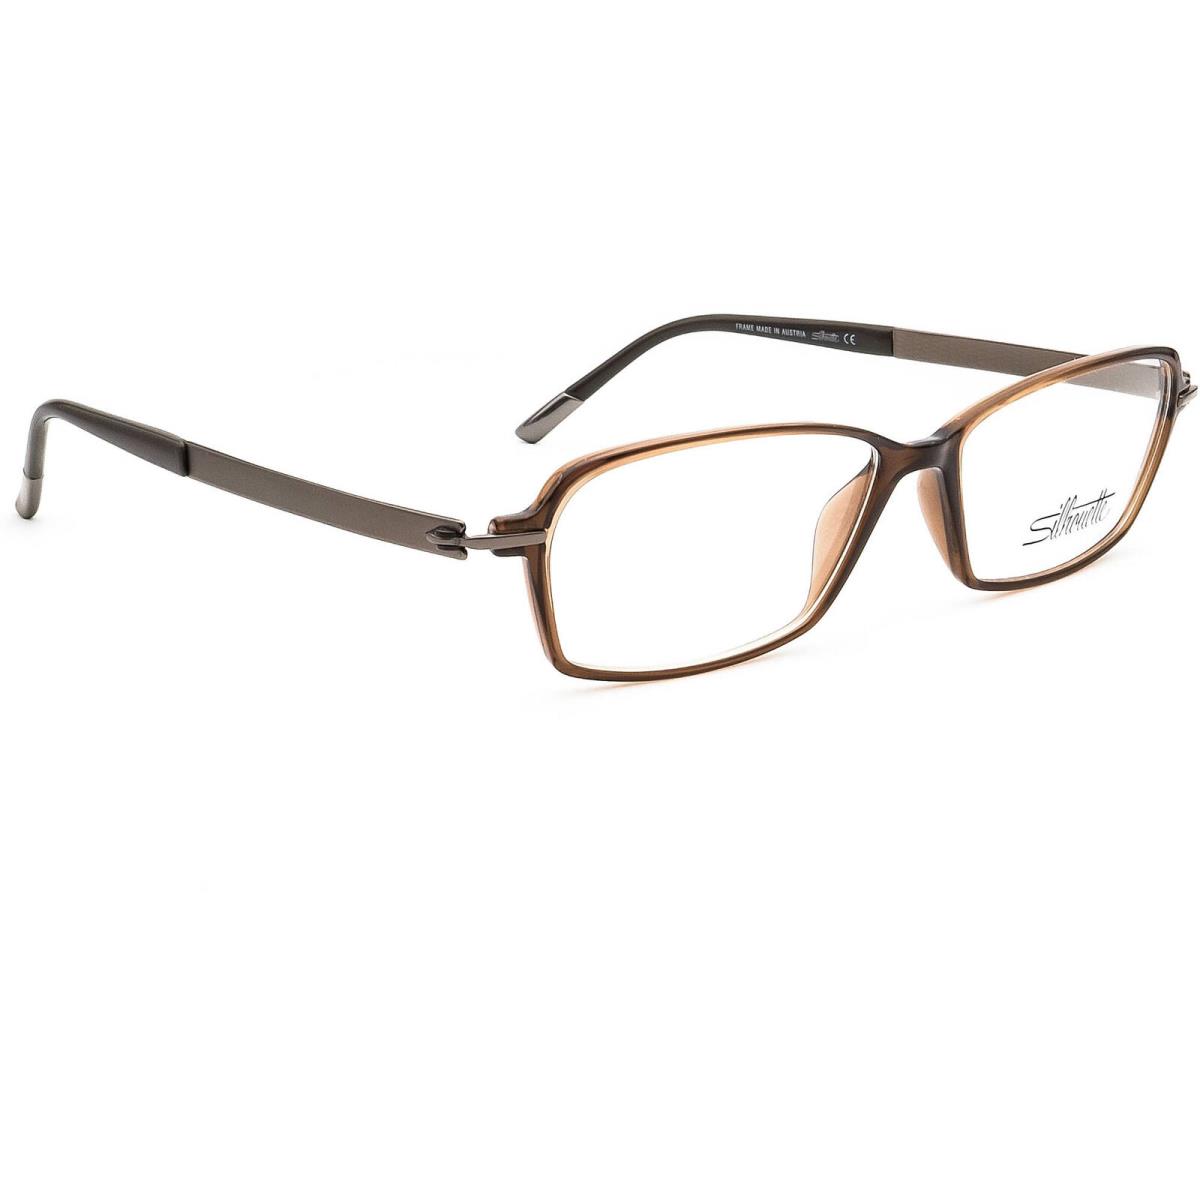 Silhouette Eyeglasses Spx 1552 40 6052 Titan Brown Rectangular Frame 53 14 135